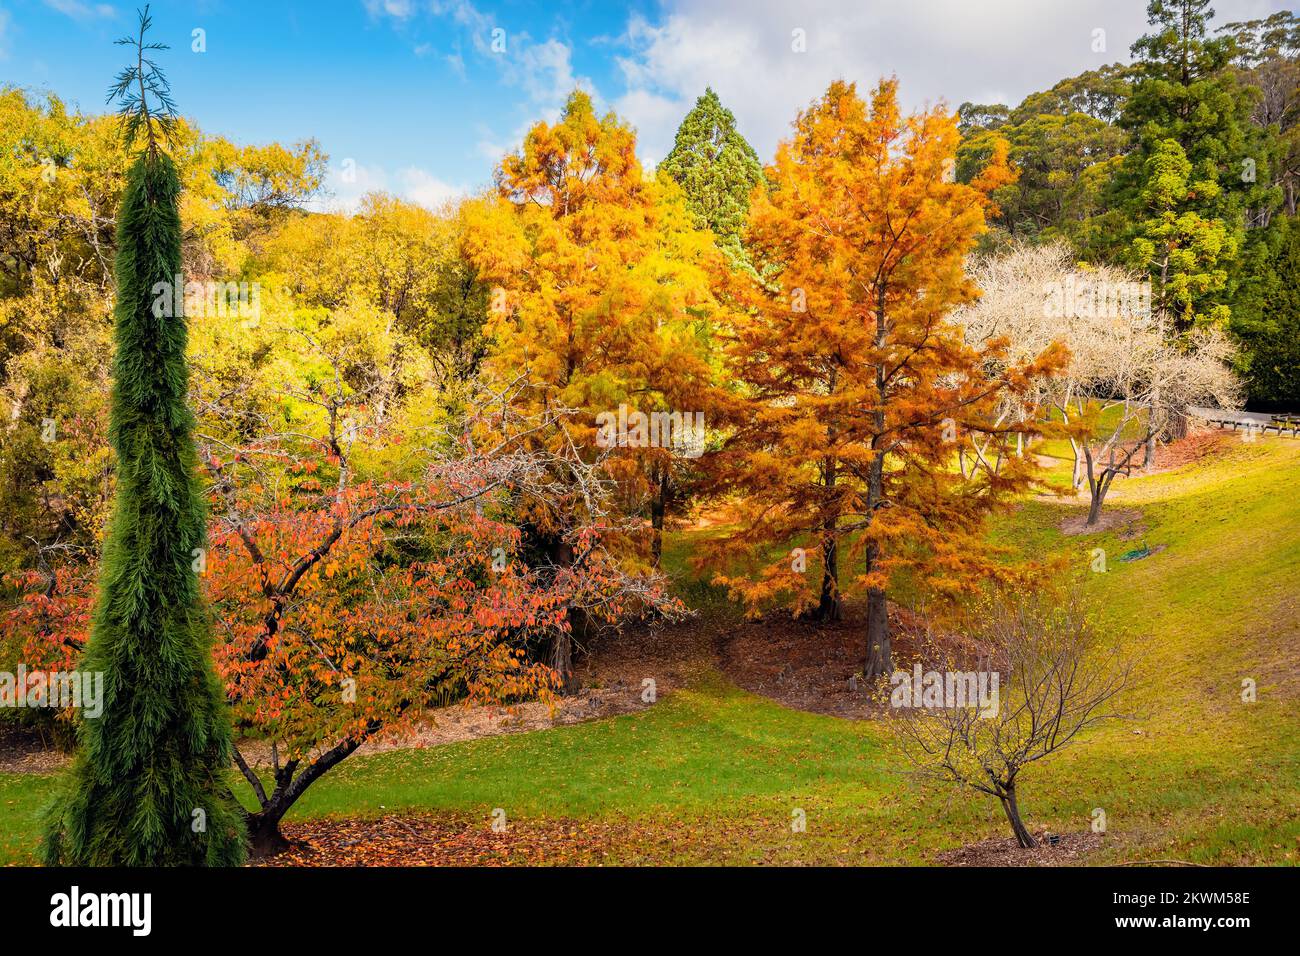 Parque público Mount Lofty en un día durante la temporada de otoño Foto de stock